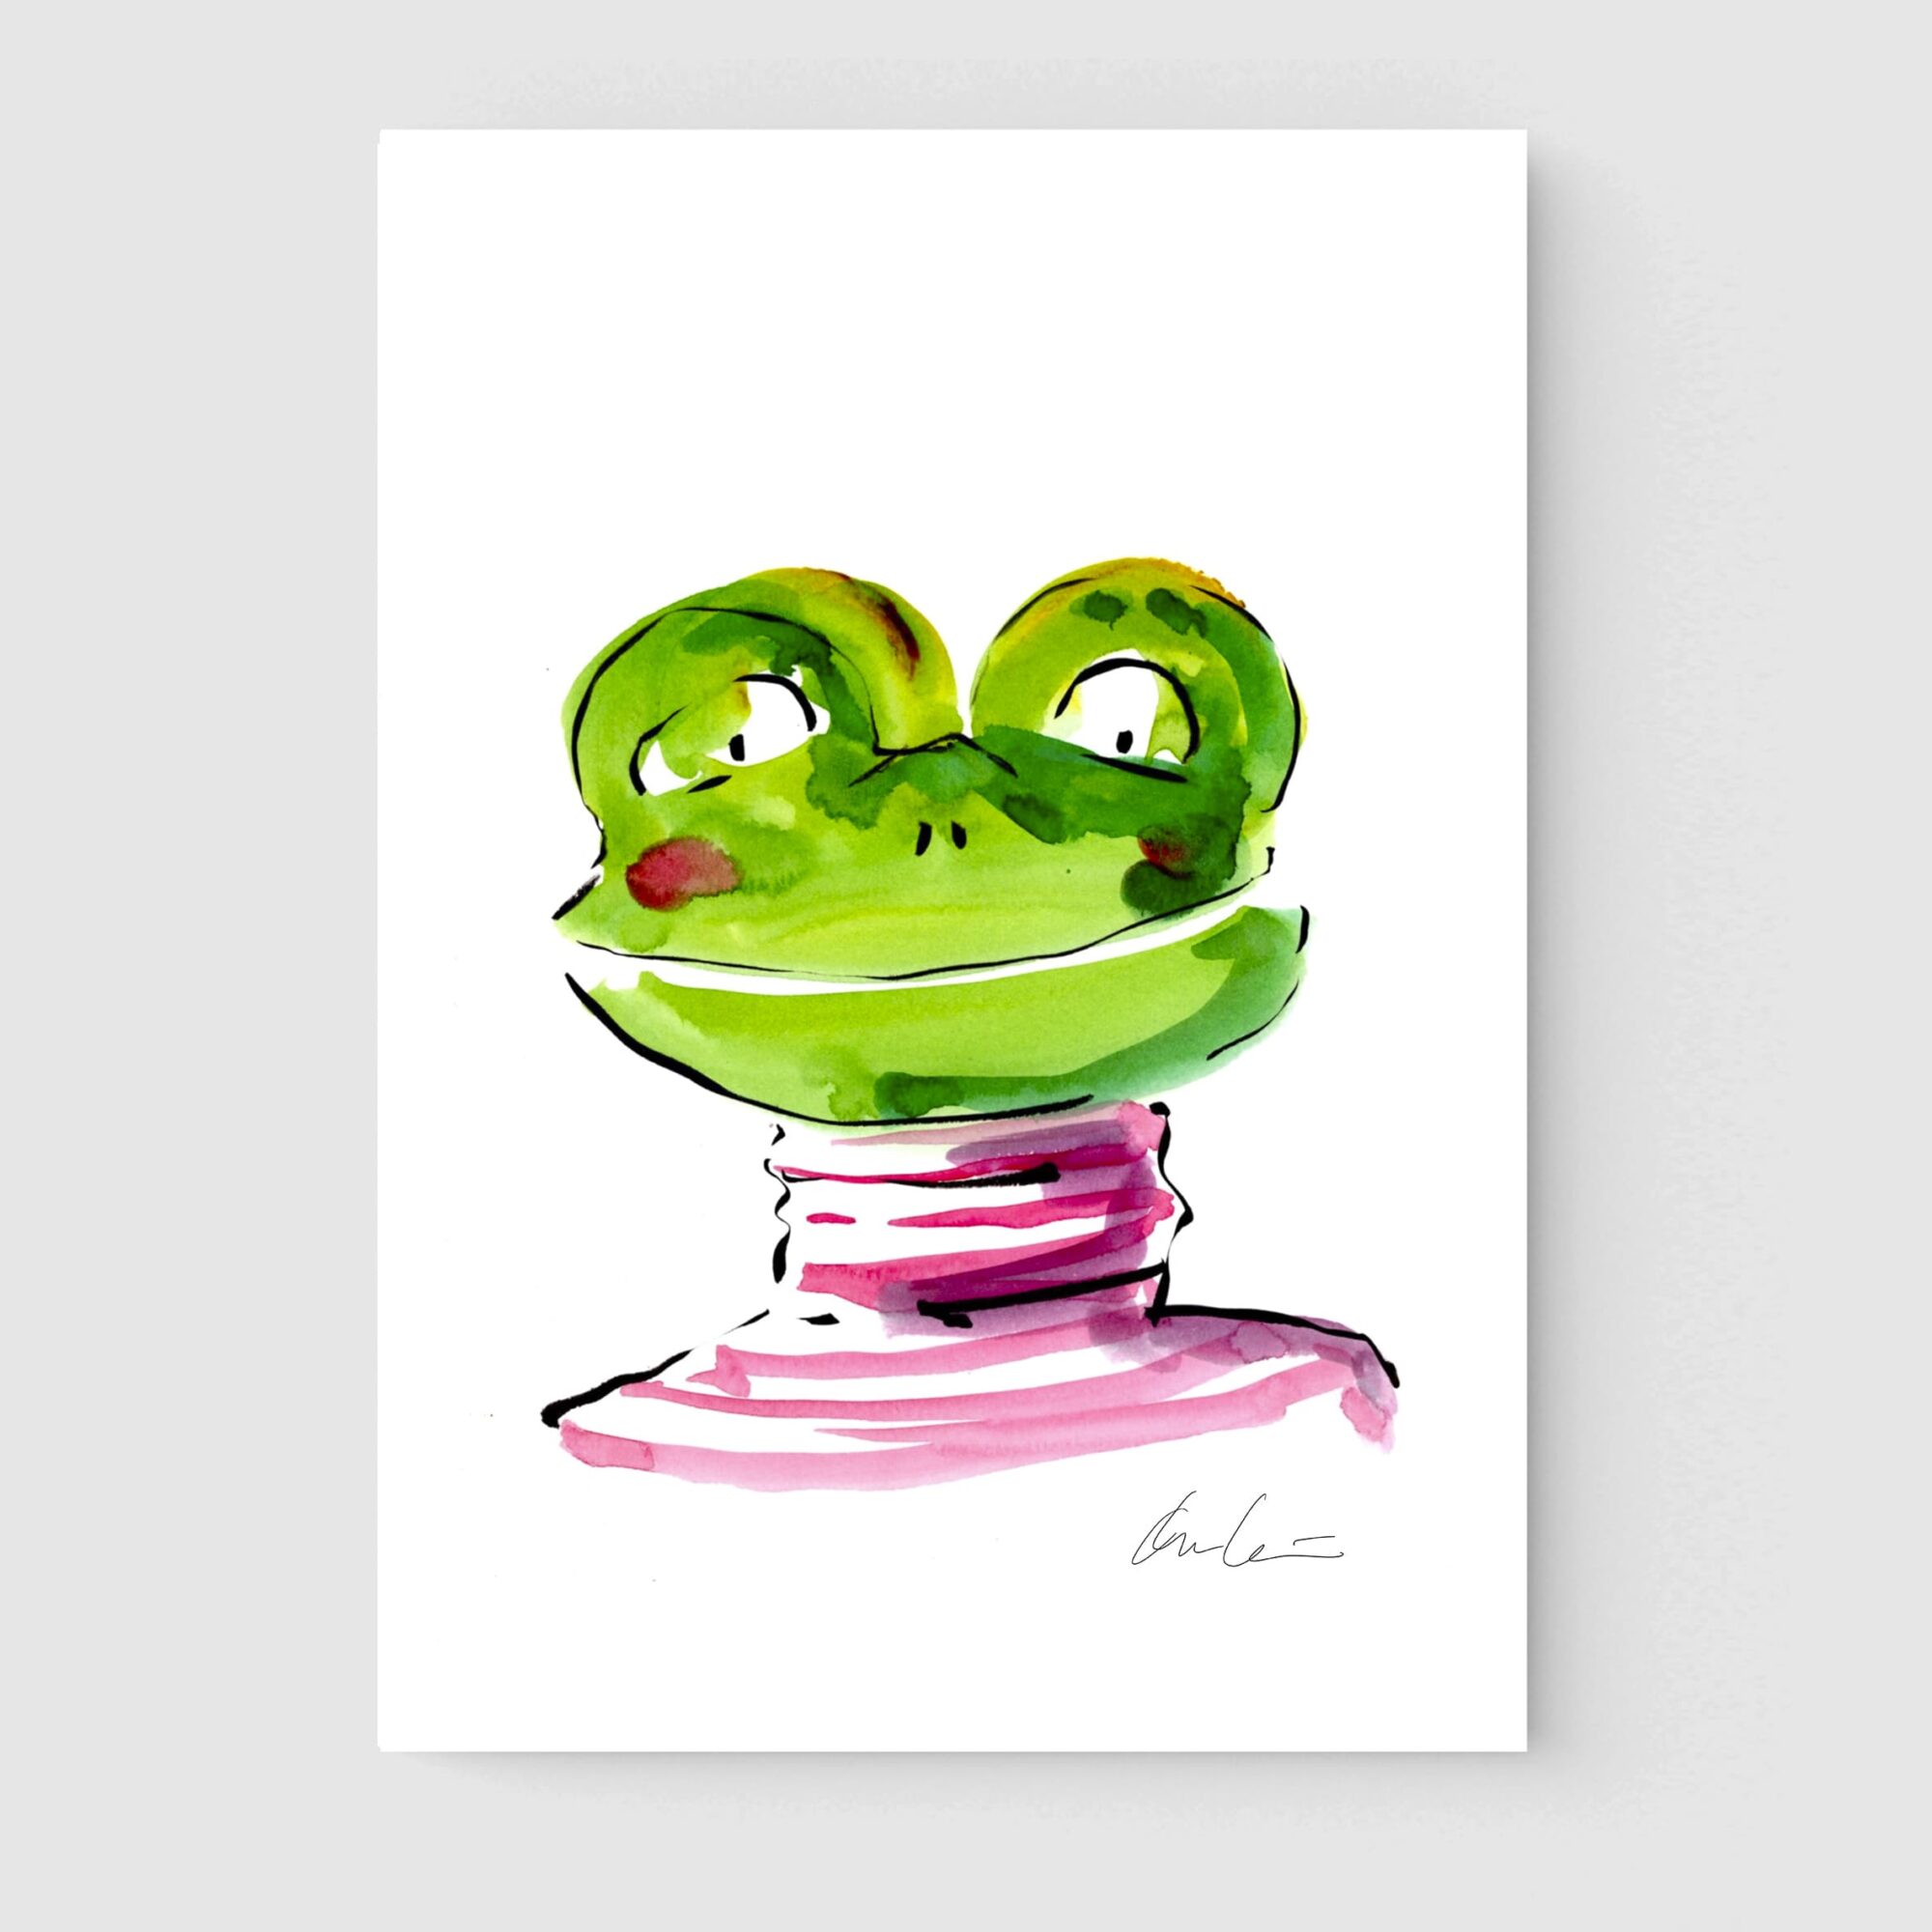 Ilustración infantil en acuarela del retrato de una rana verde con jersey rosa